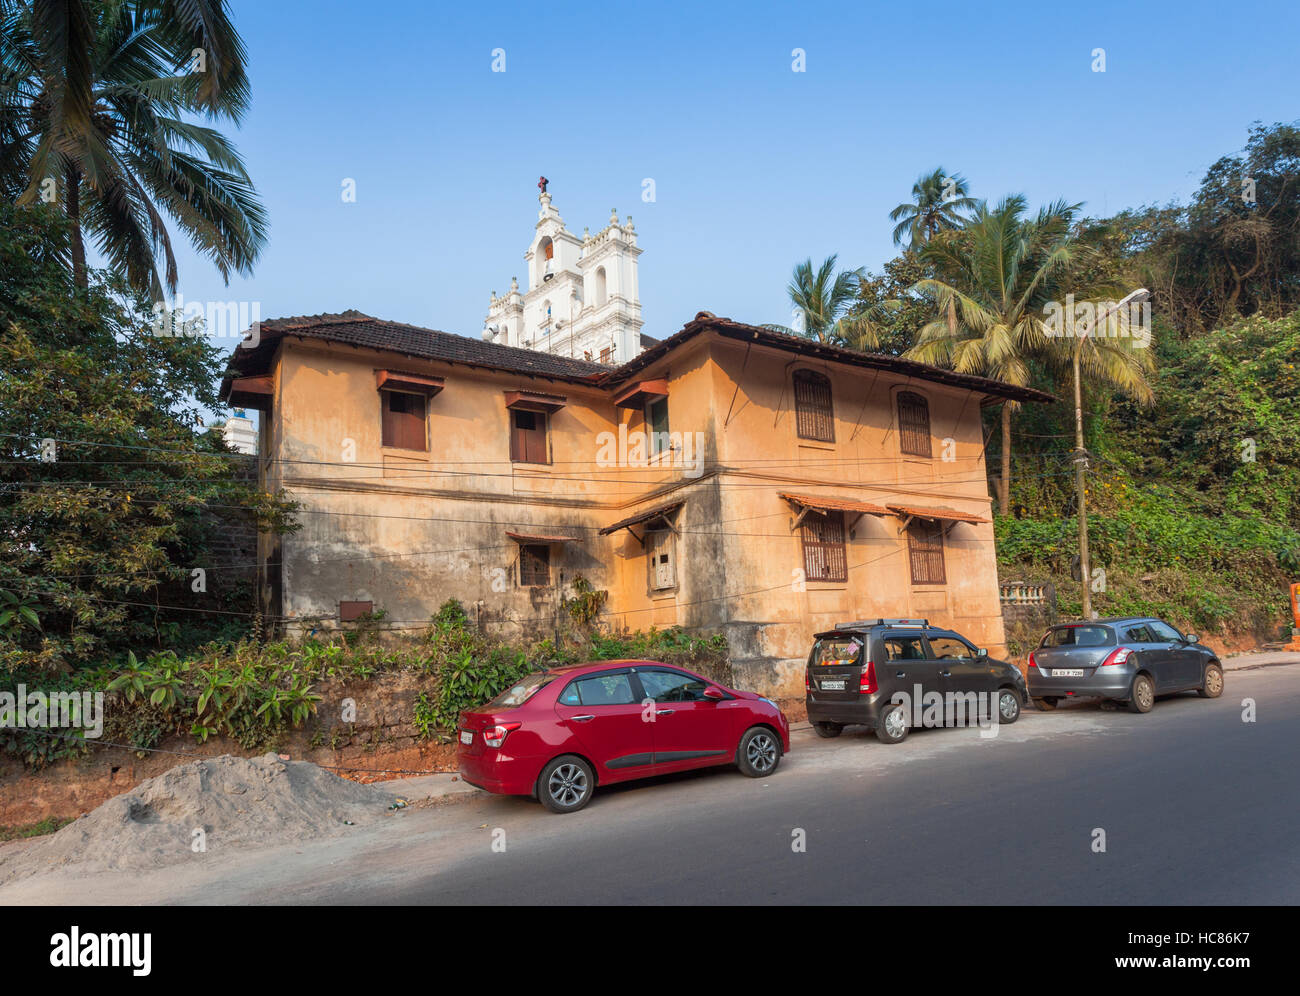 Haus in Panjim, Goa, Indien, während der portugiesischen Kolonialzeit Besatzung gebaut. Stockfoto